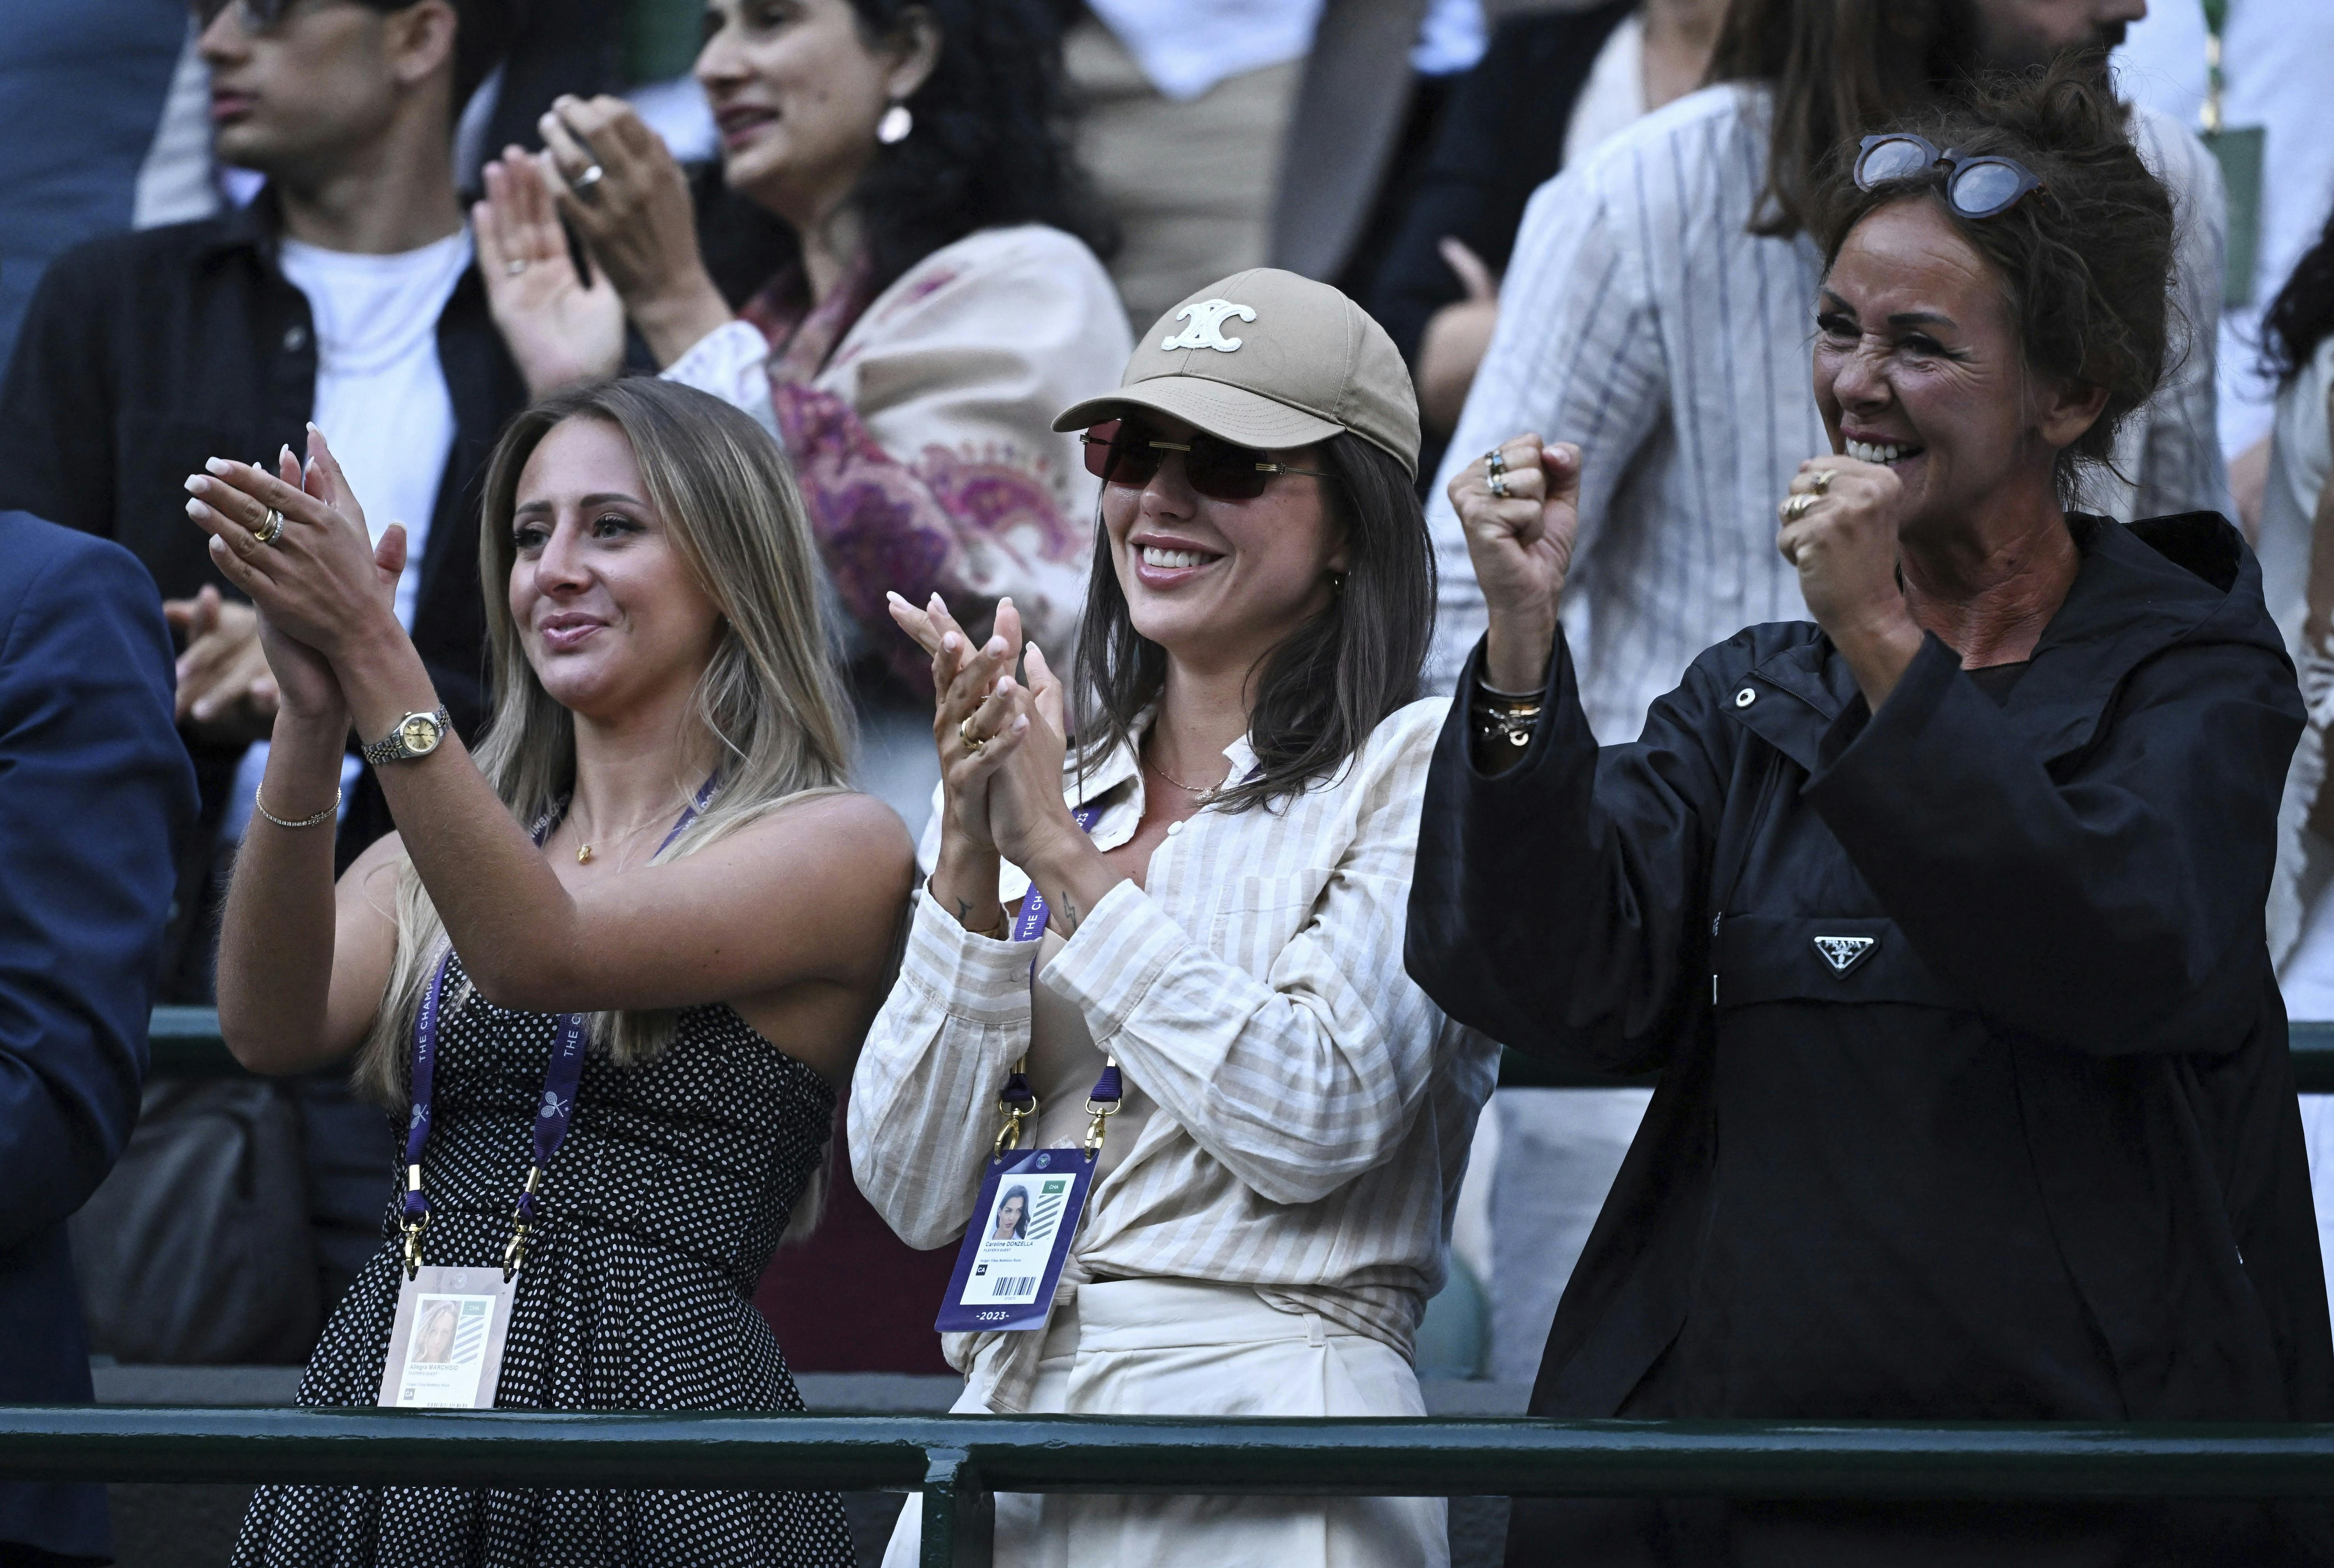 Det blev hurtigt en fast opstilling på Wimbledon-anlægget, når Holger spillede: Hans mor Aneke Rune satte sig med Caroline Donzella ved sin side. Hun blev så flankeret af Allegra Marchisio.